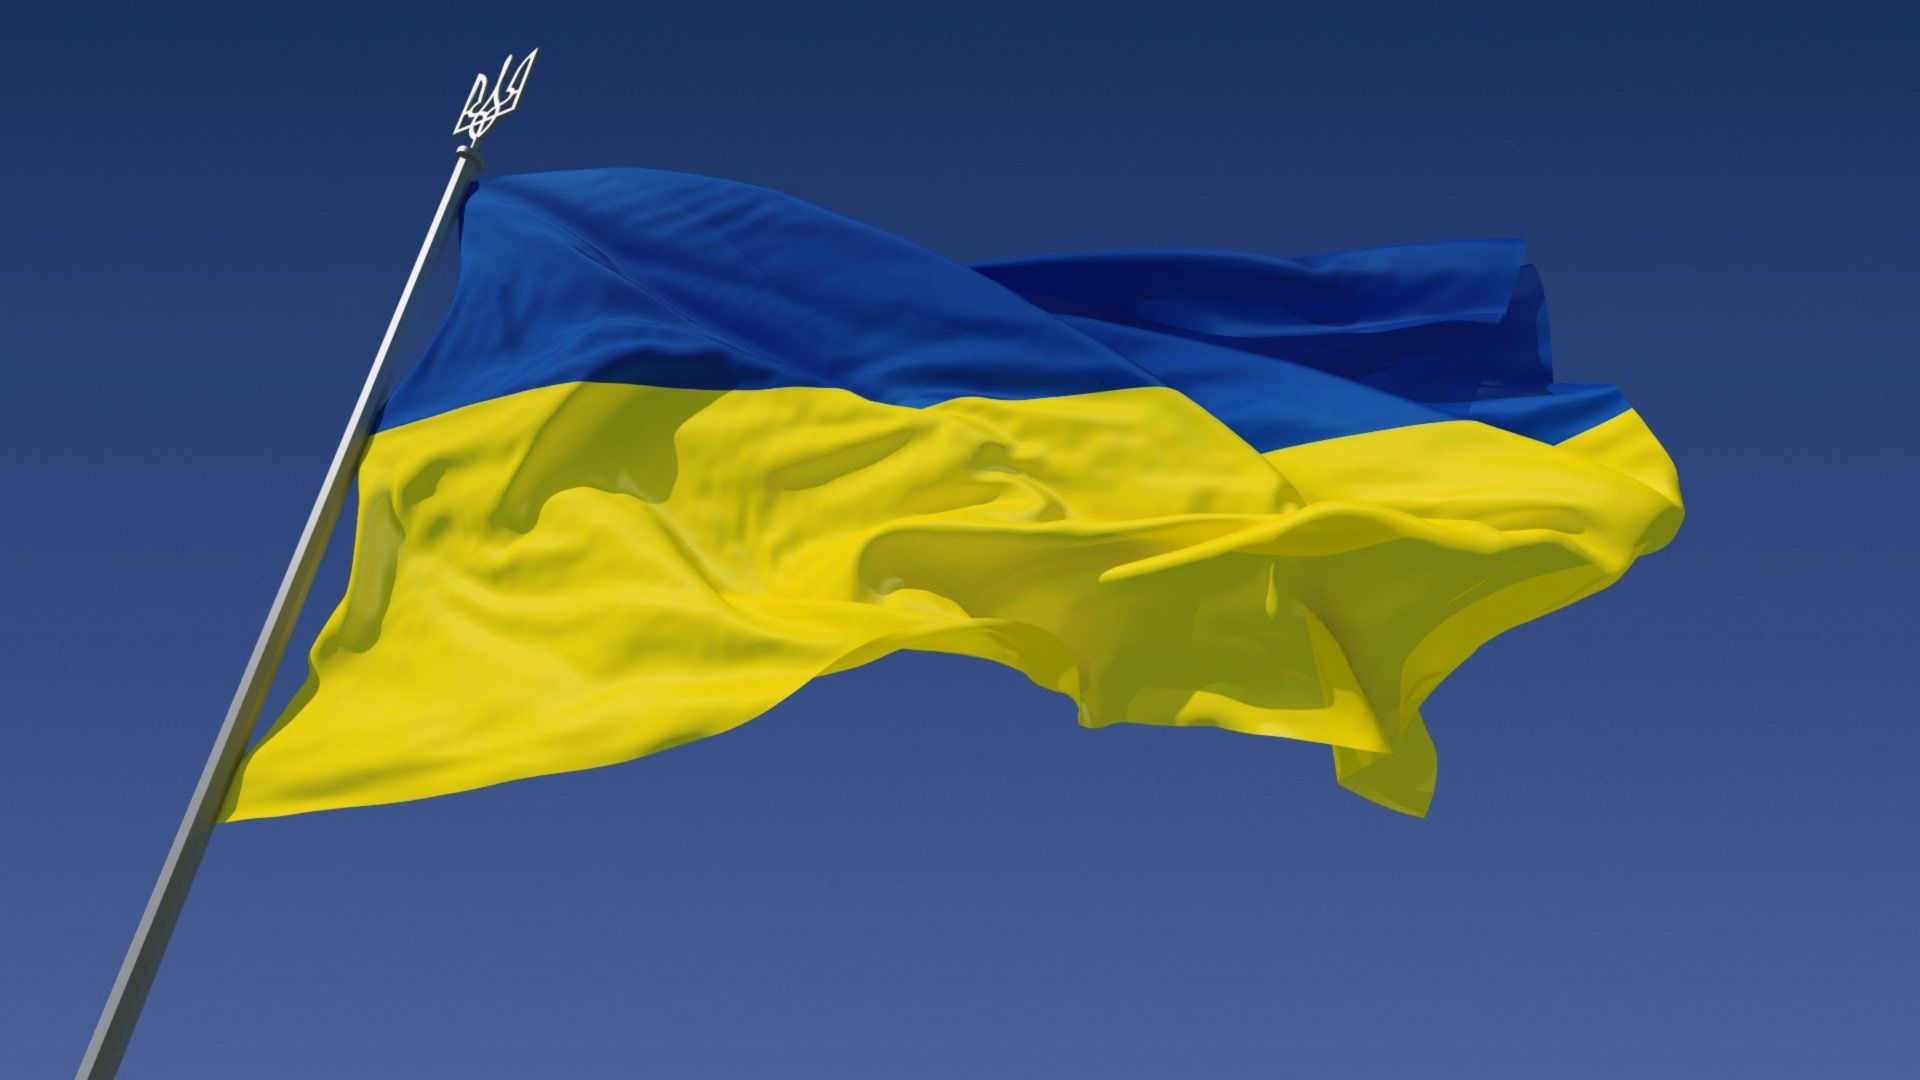 Украина, Флаг Украины, Ukraine, Ukrainian Flag, standwithukraine (horizontal)